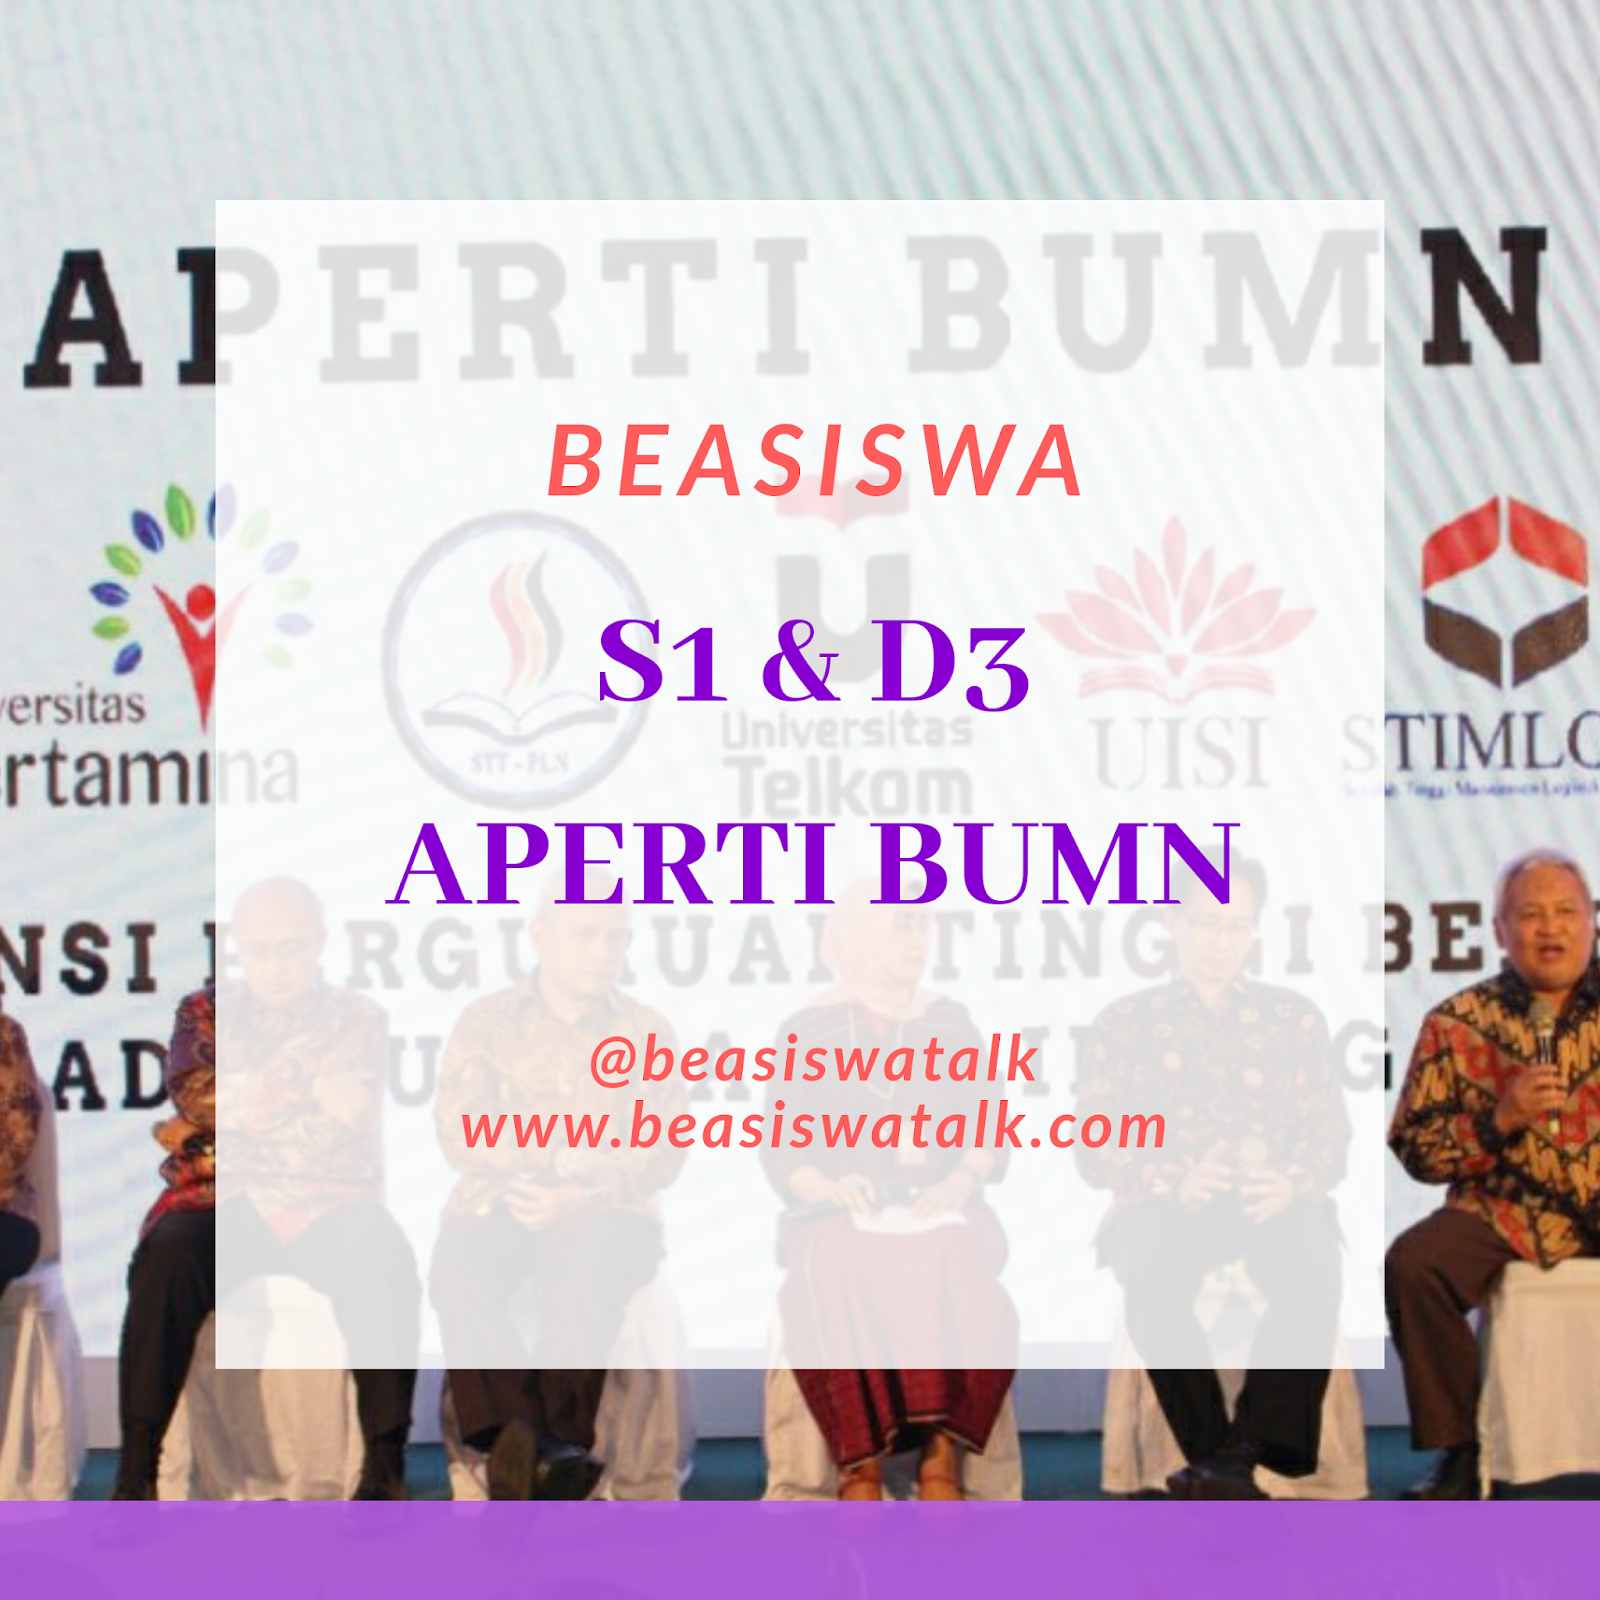 Full Beasiswa S1 & D3 Aperti Bumn - Beasiswatalk